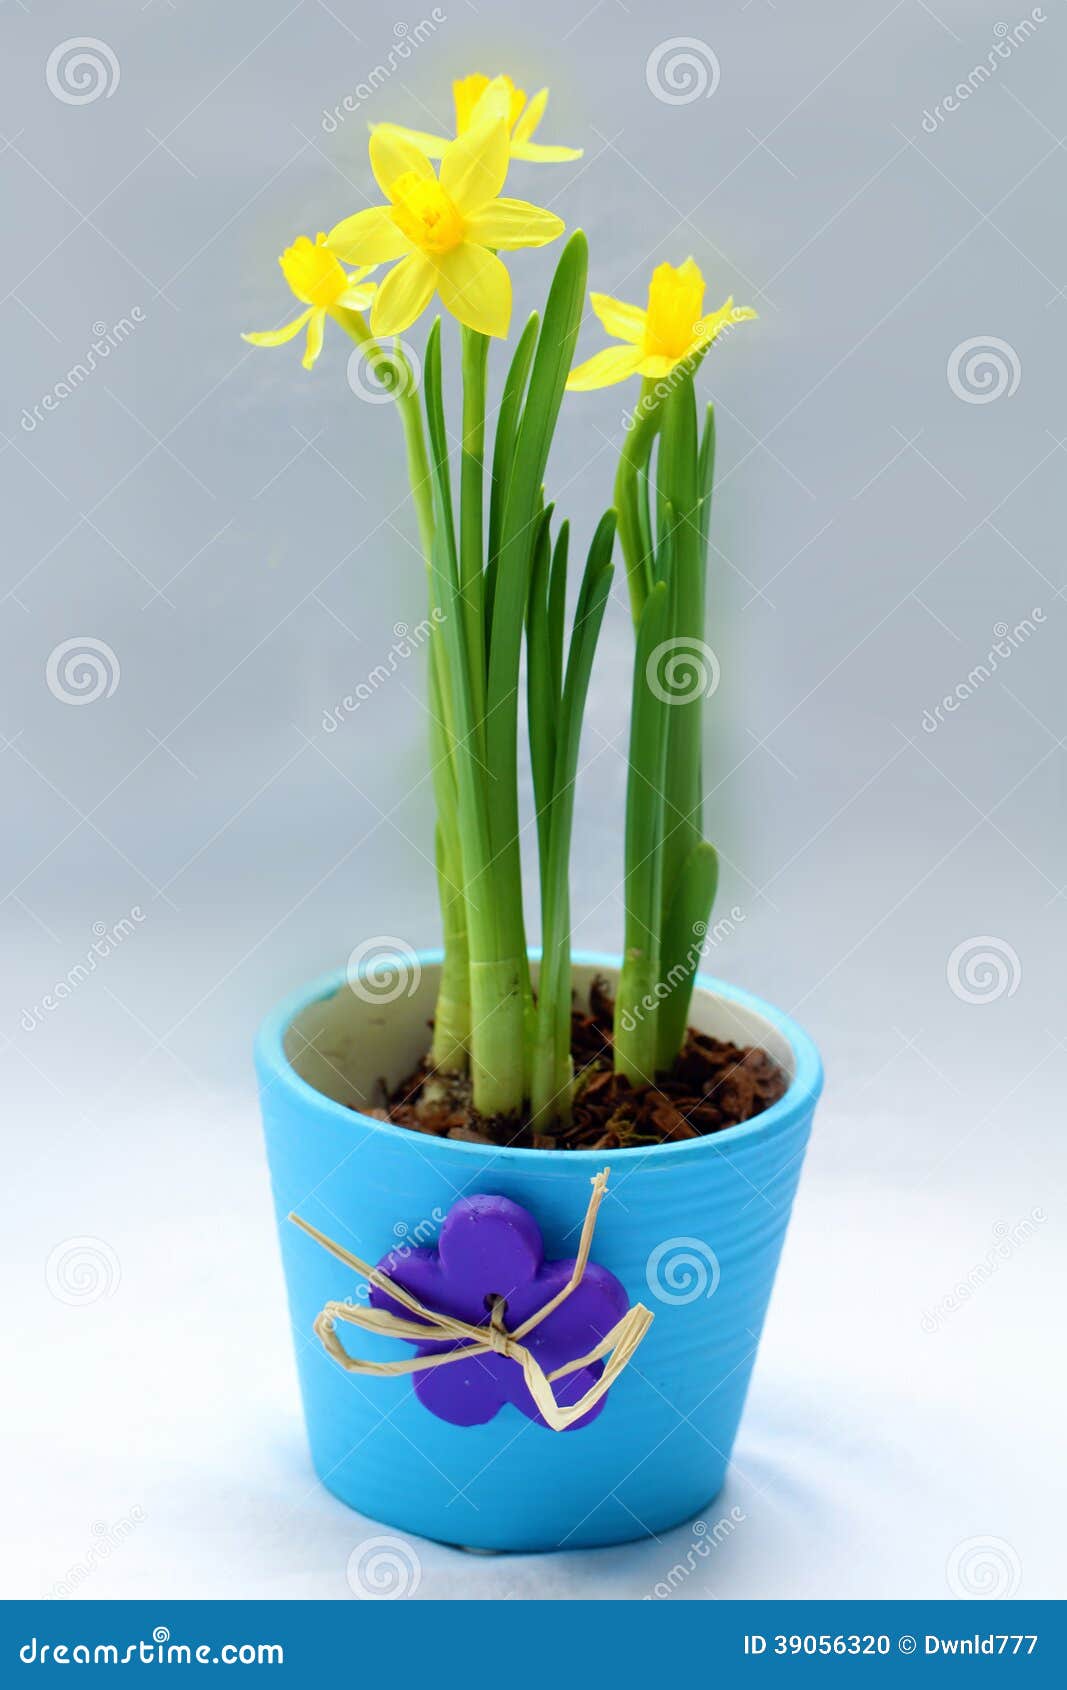 Jonquilles Dans Le Pot De Fleur Photo stock - Image du flore, printemps:  39056320